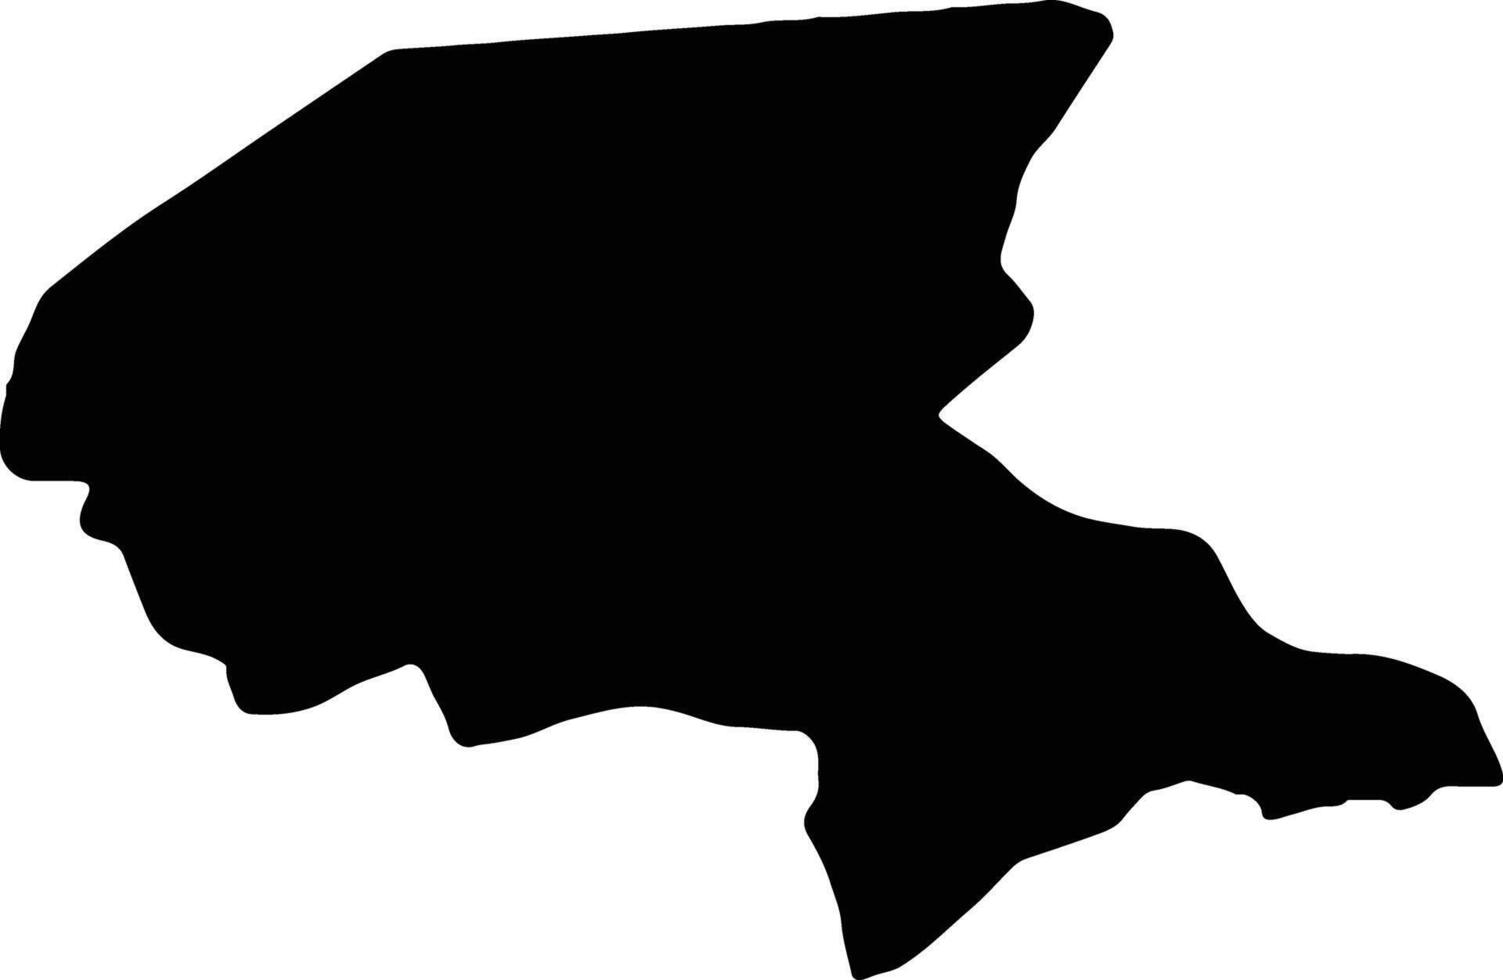 shabwah yemen silhouette carta geografica vettore